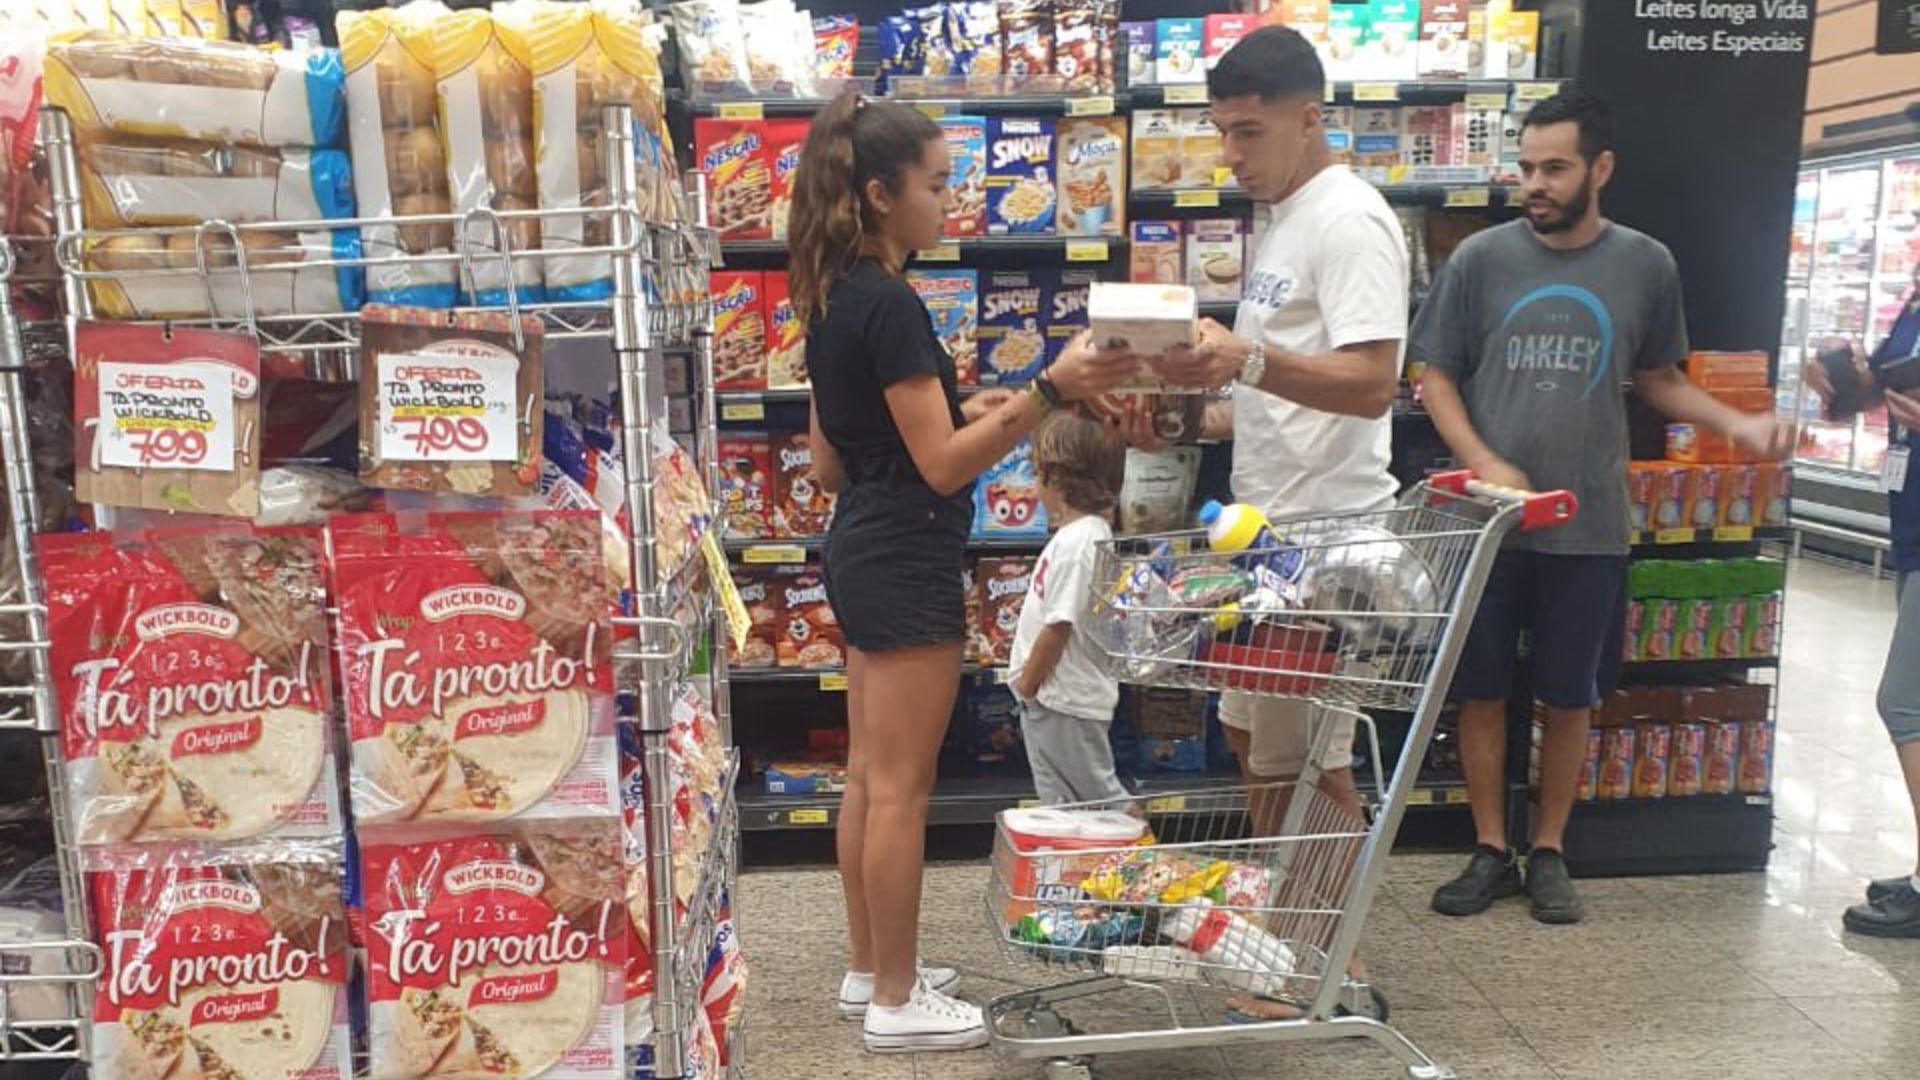 Luis Suárez fazendo compras em mercado - Foto: Reprodução/Twitter @GremioTimeLine